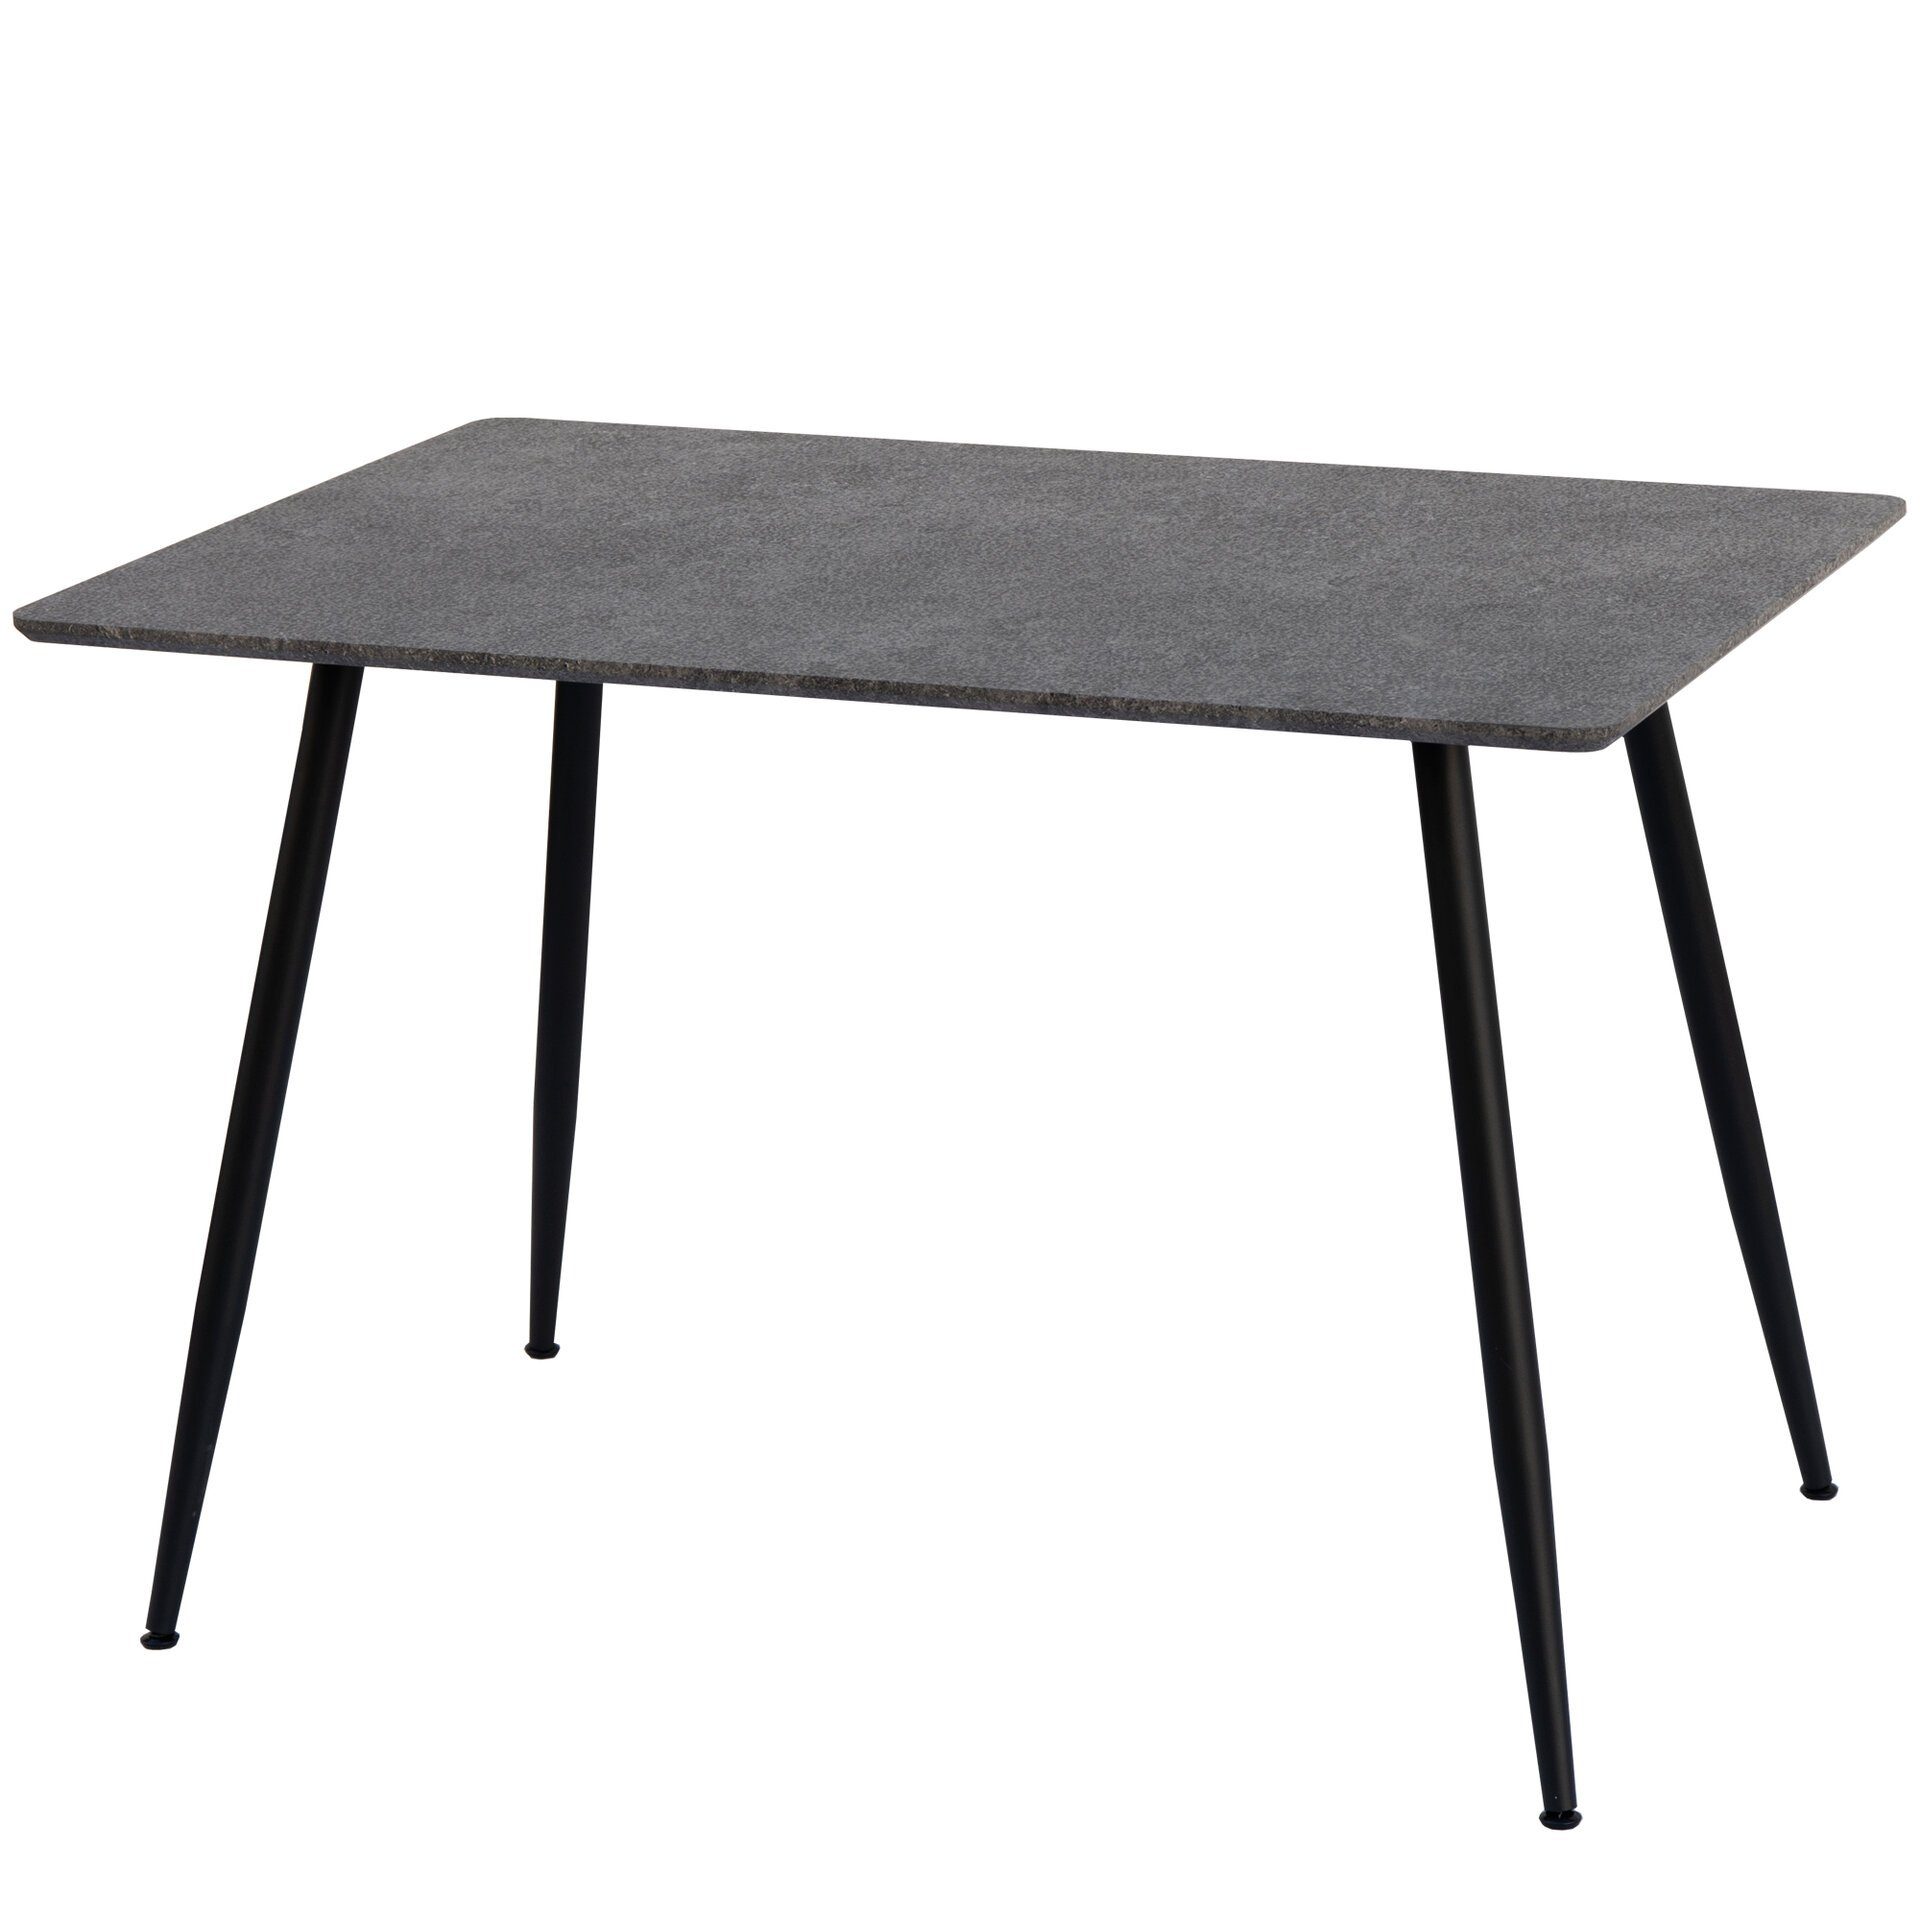 Metallrahmeт Granitoptik-Grau Tisch 115x75 Esszimmertisch MDF Danelia, TRISENS Esstisch Küchentisch Esstisch